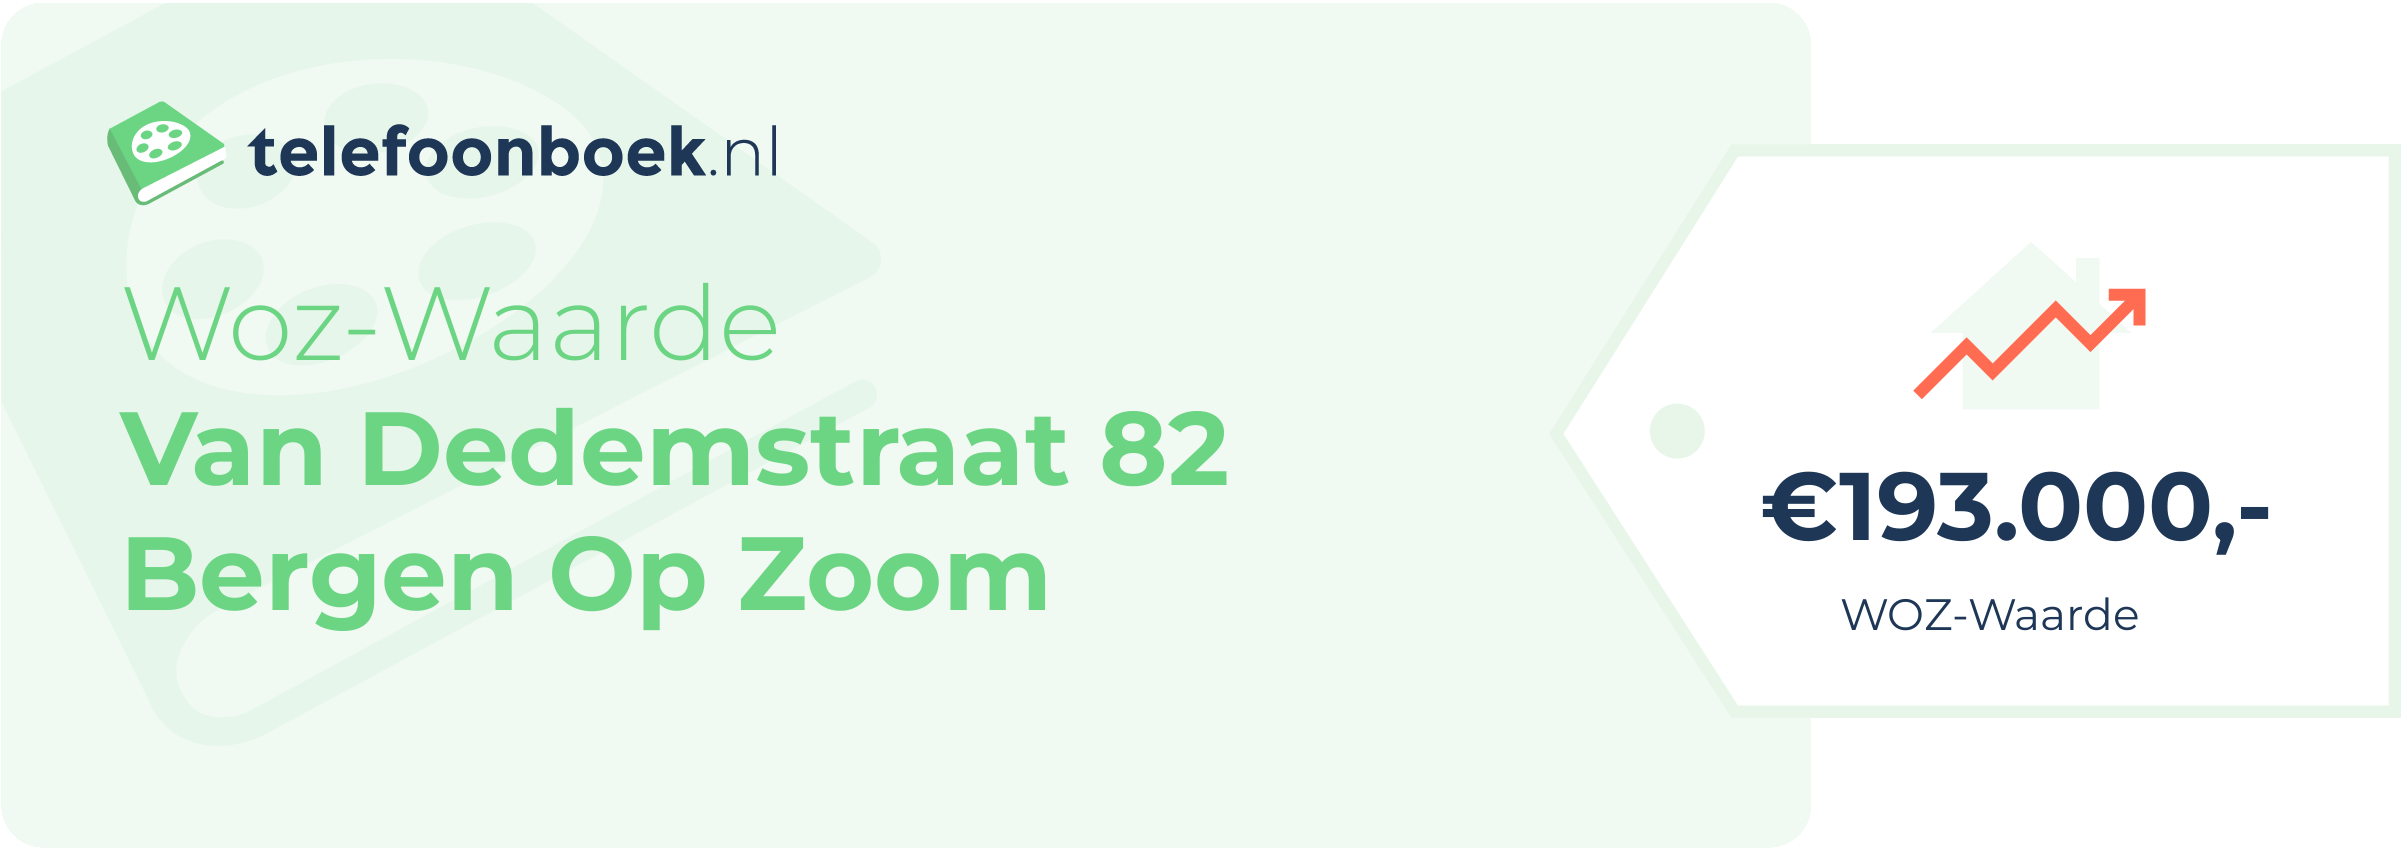 WOZ-waarde Van Dedemstraat 82 Bergen Op Zoom